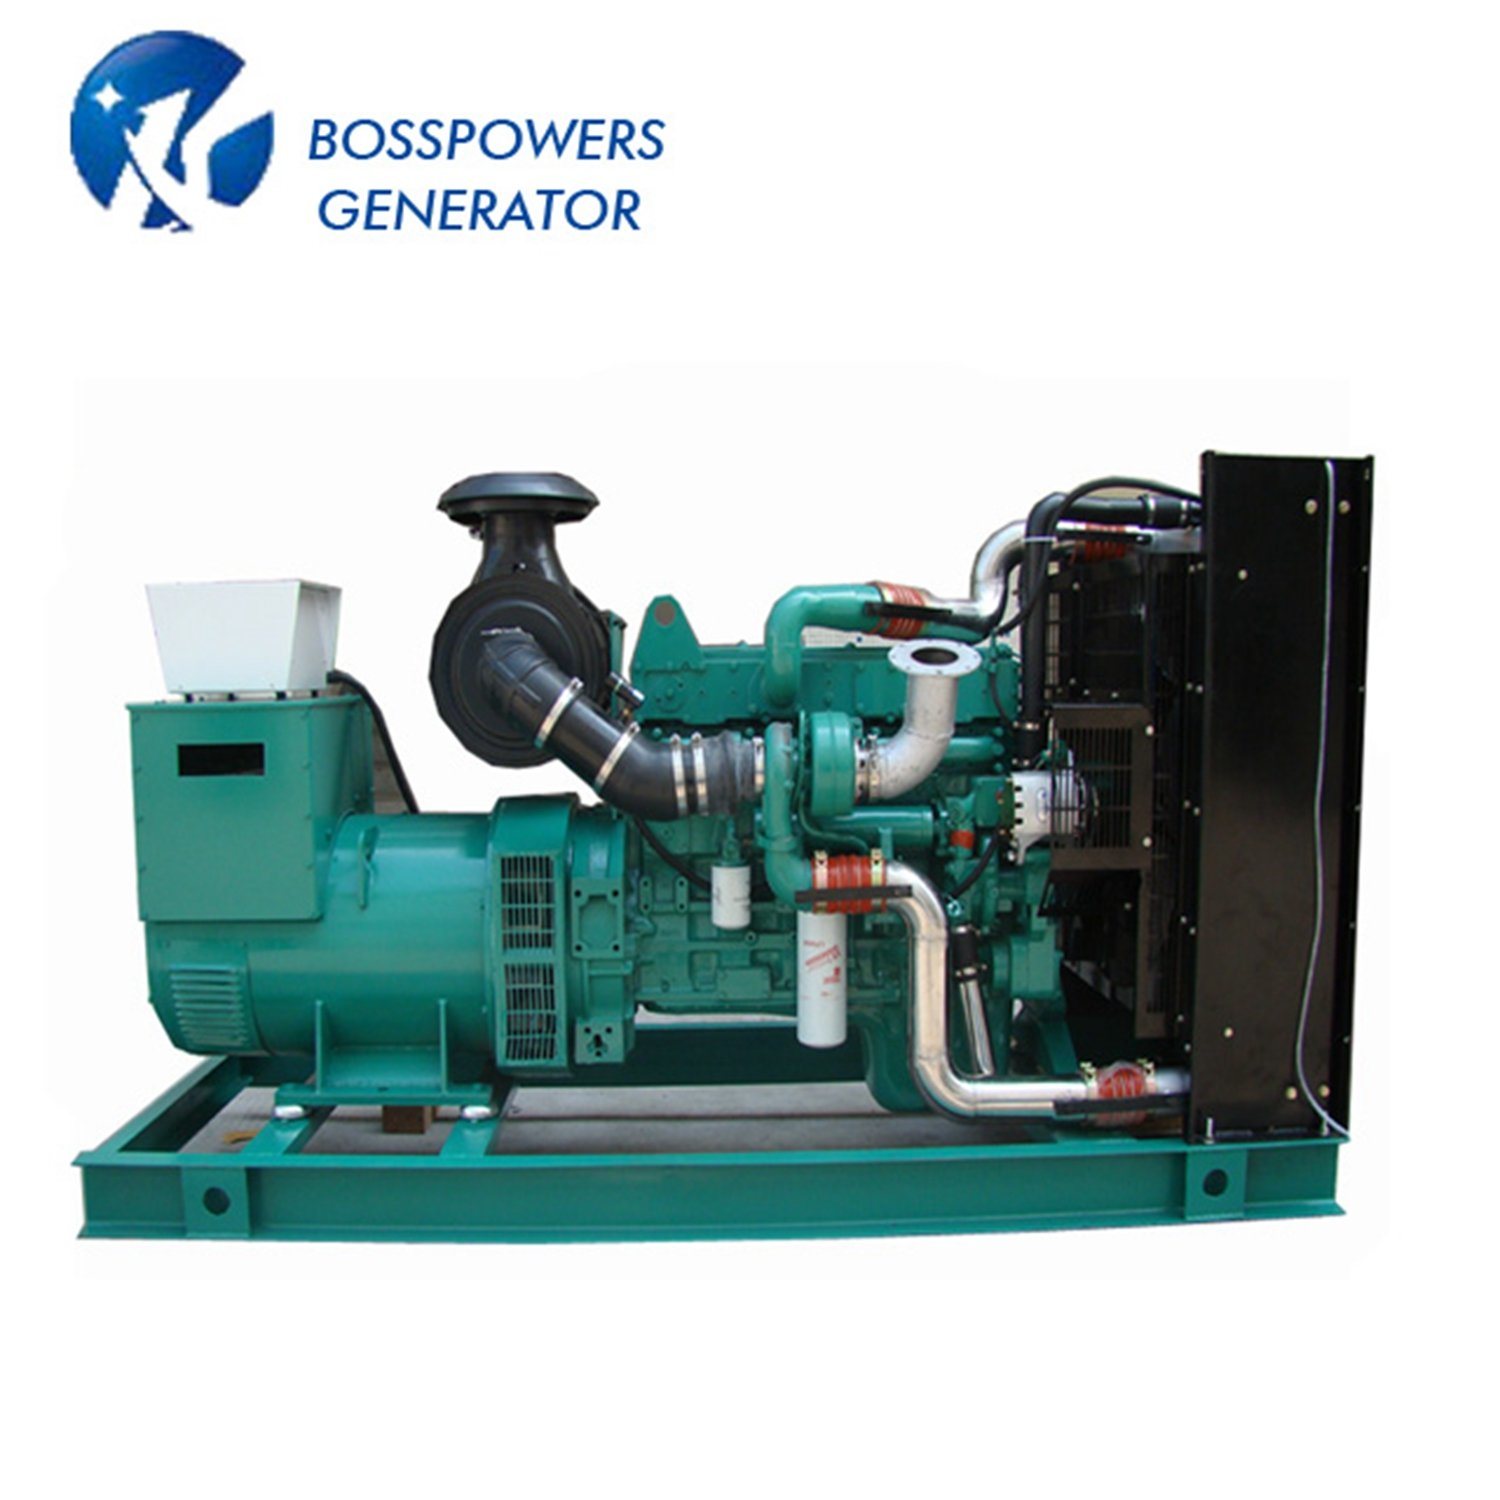 450kVA Prime Power Diesel Generator Powered by Kp441